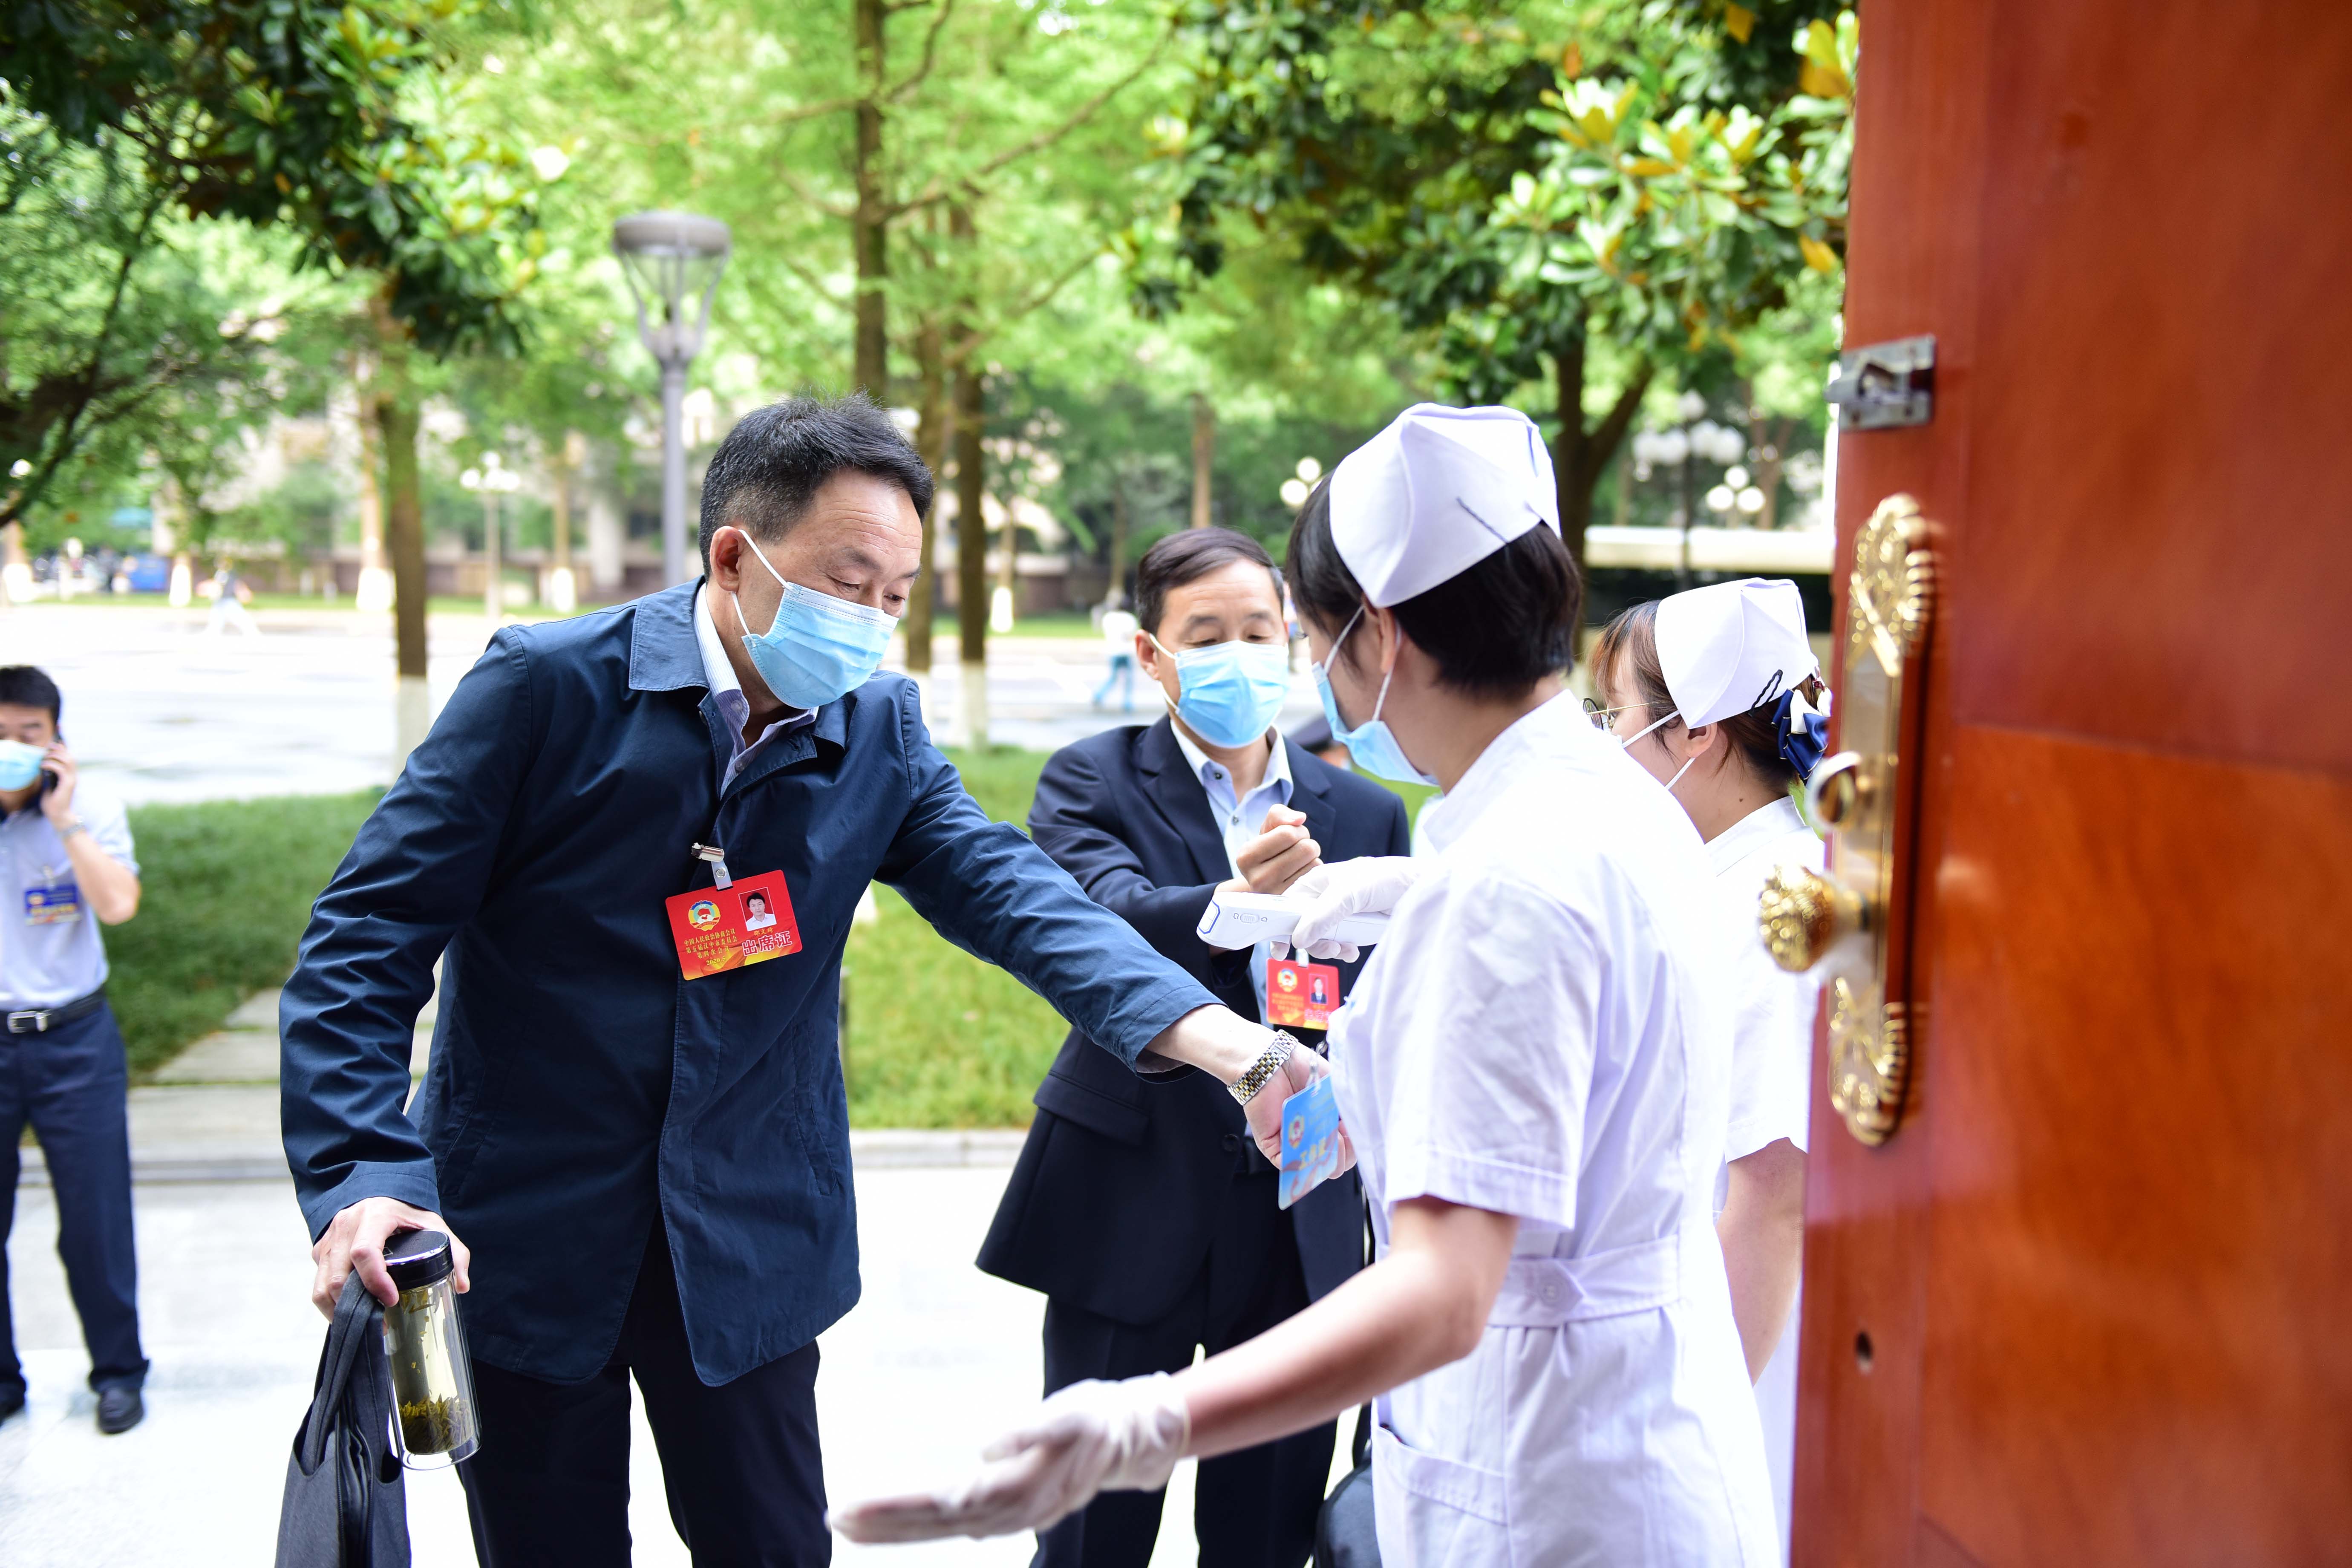 参加市政协五届四次会议的委员接受体温检测后步入会场。 本报记者 汤江 摄。